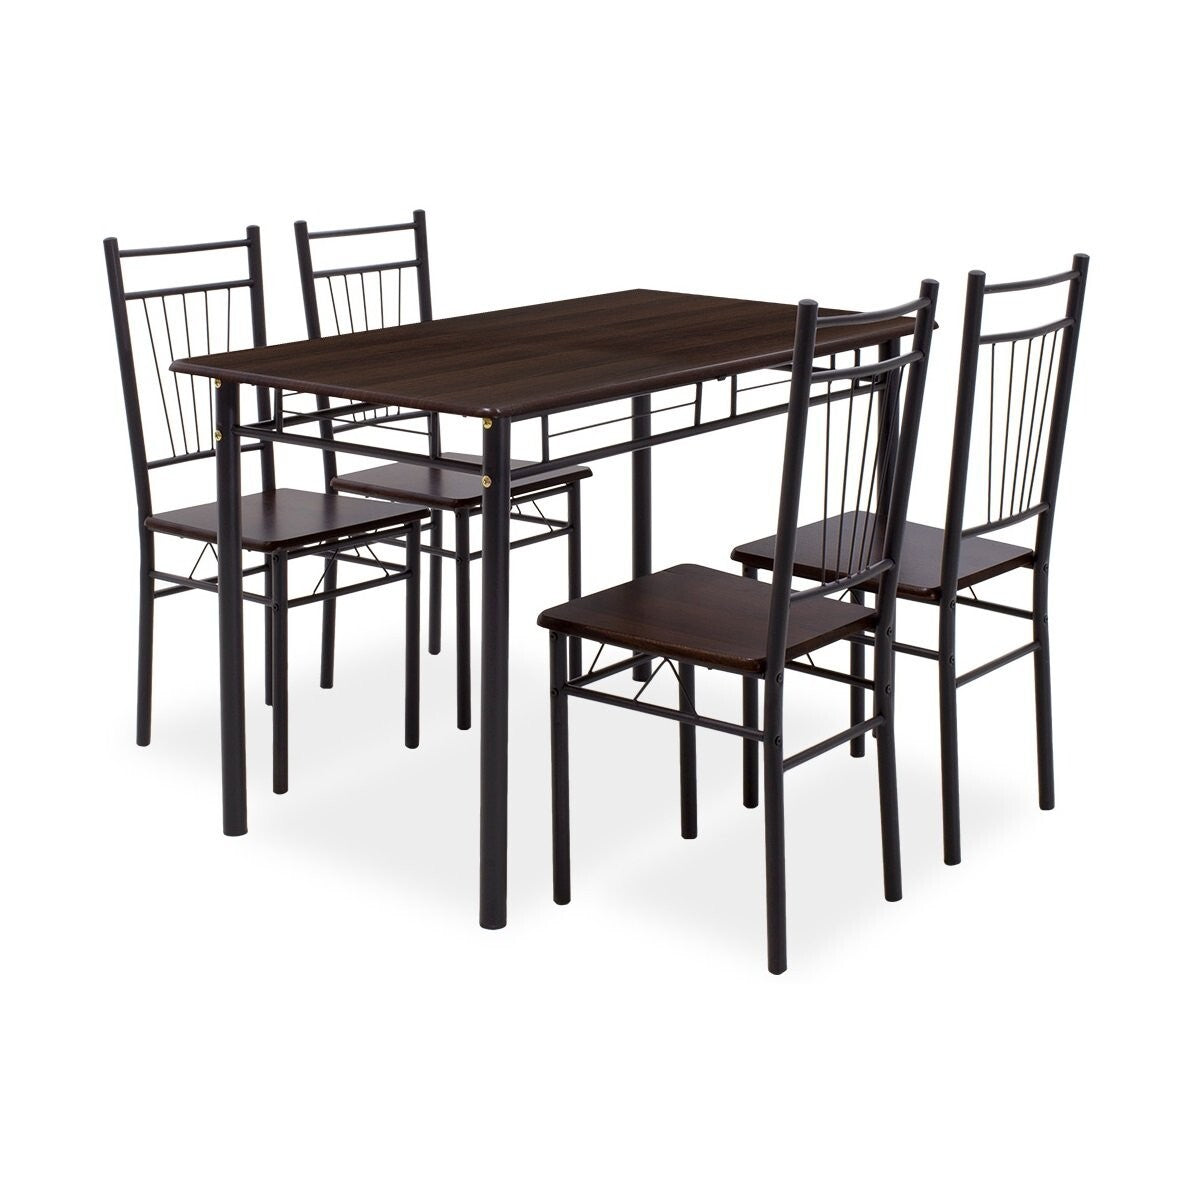 Jedálenský set Raul - 4x stolička, 1x stôl (orech, čierna)